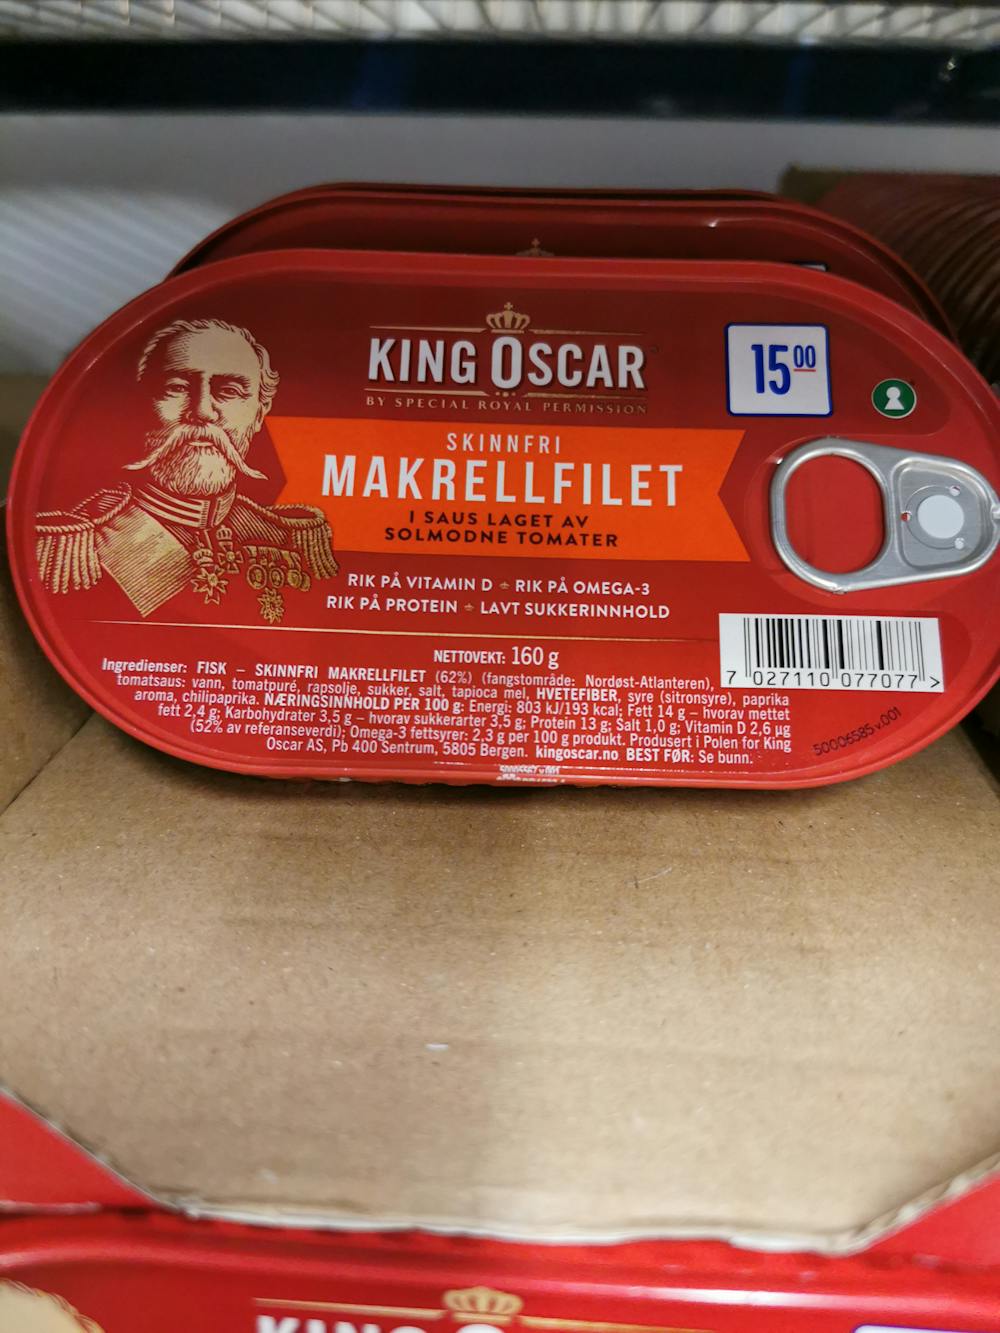 Ingredienslisten til King Oscar Skinnfri makrellfilet, i saus laget av solmodne tomater